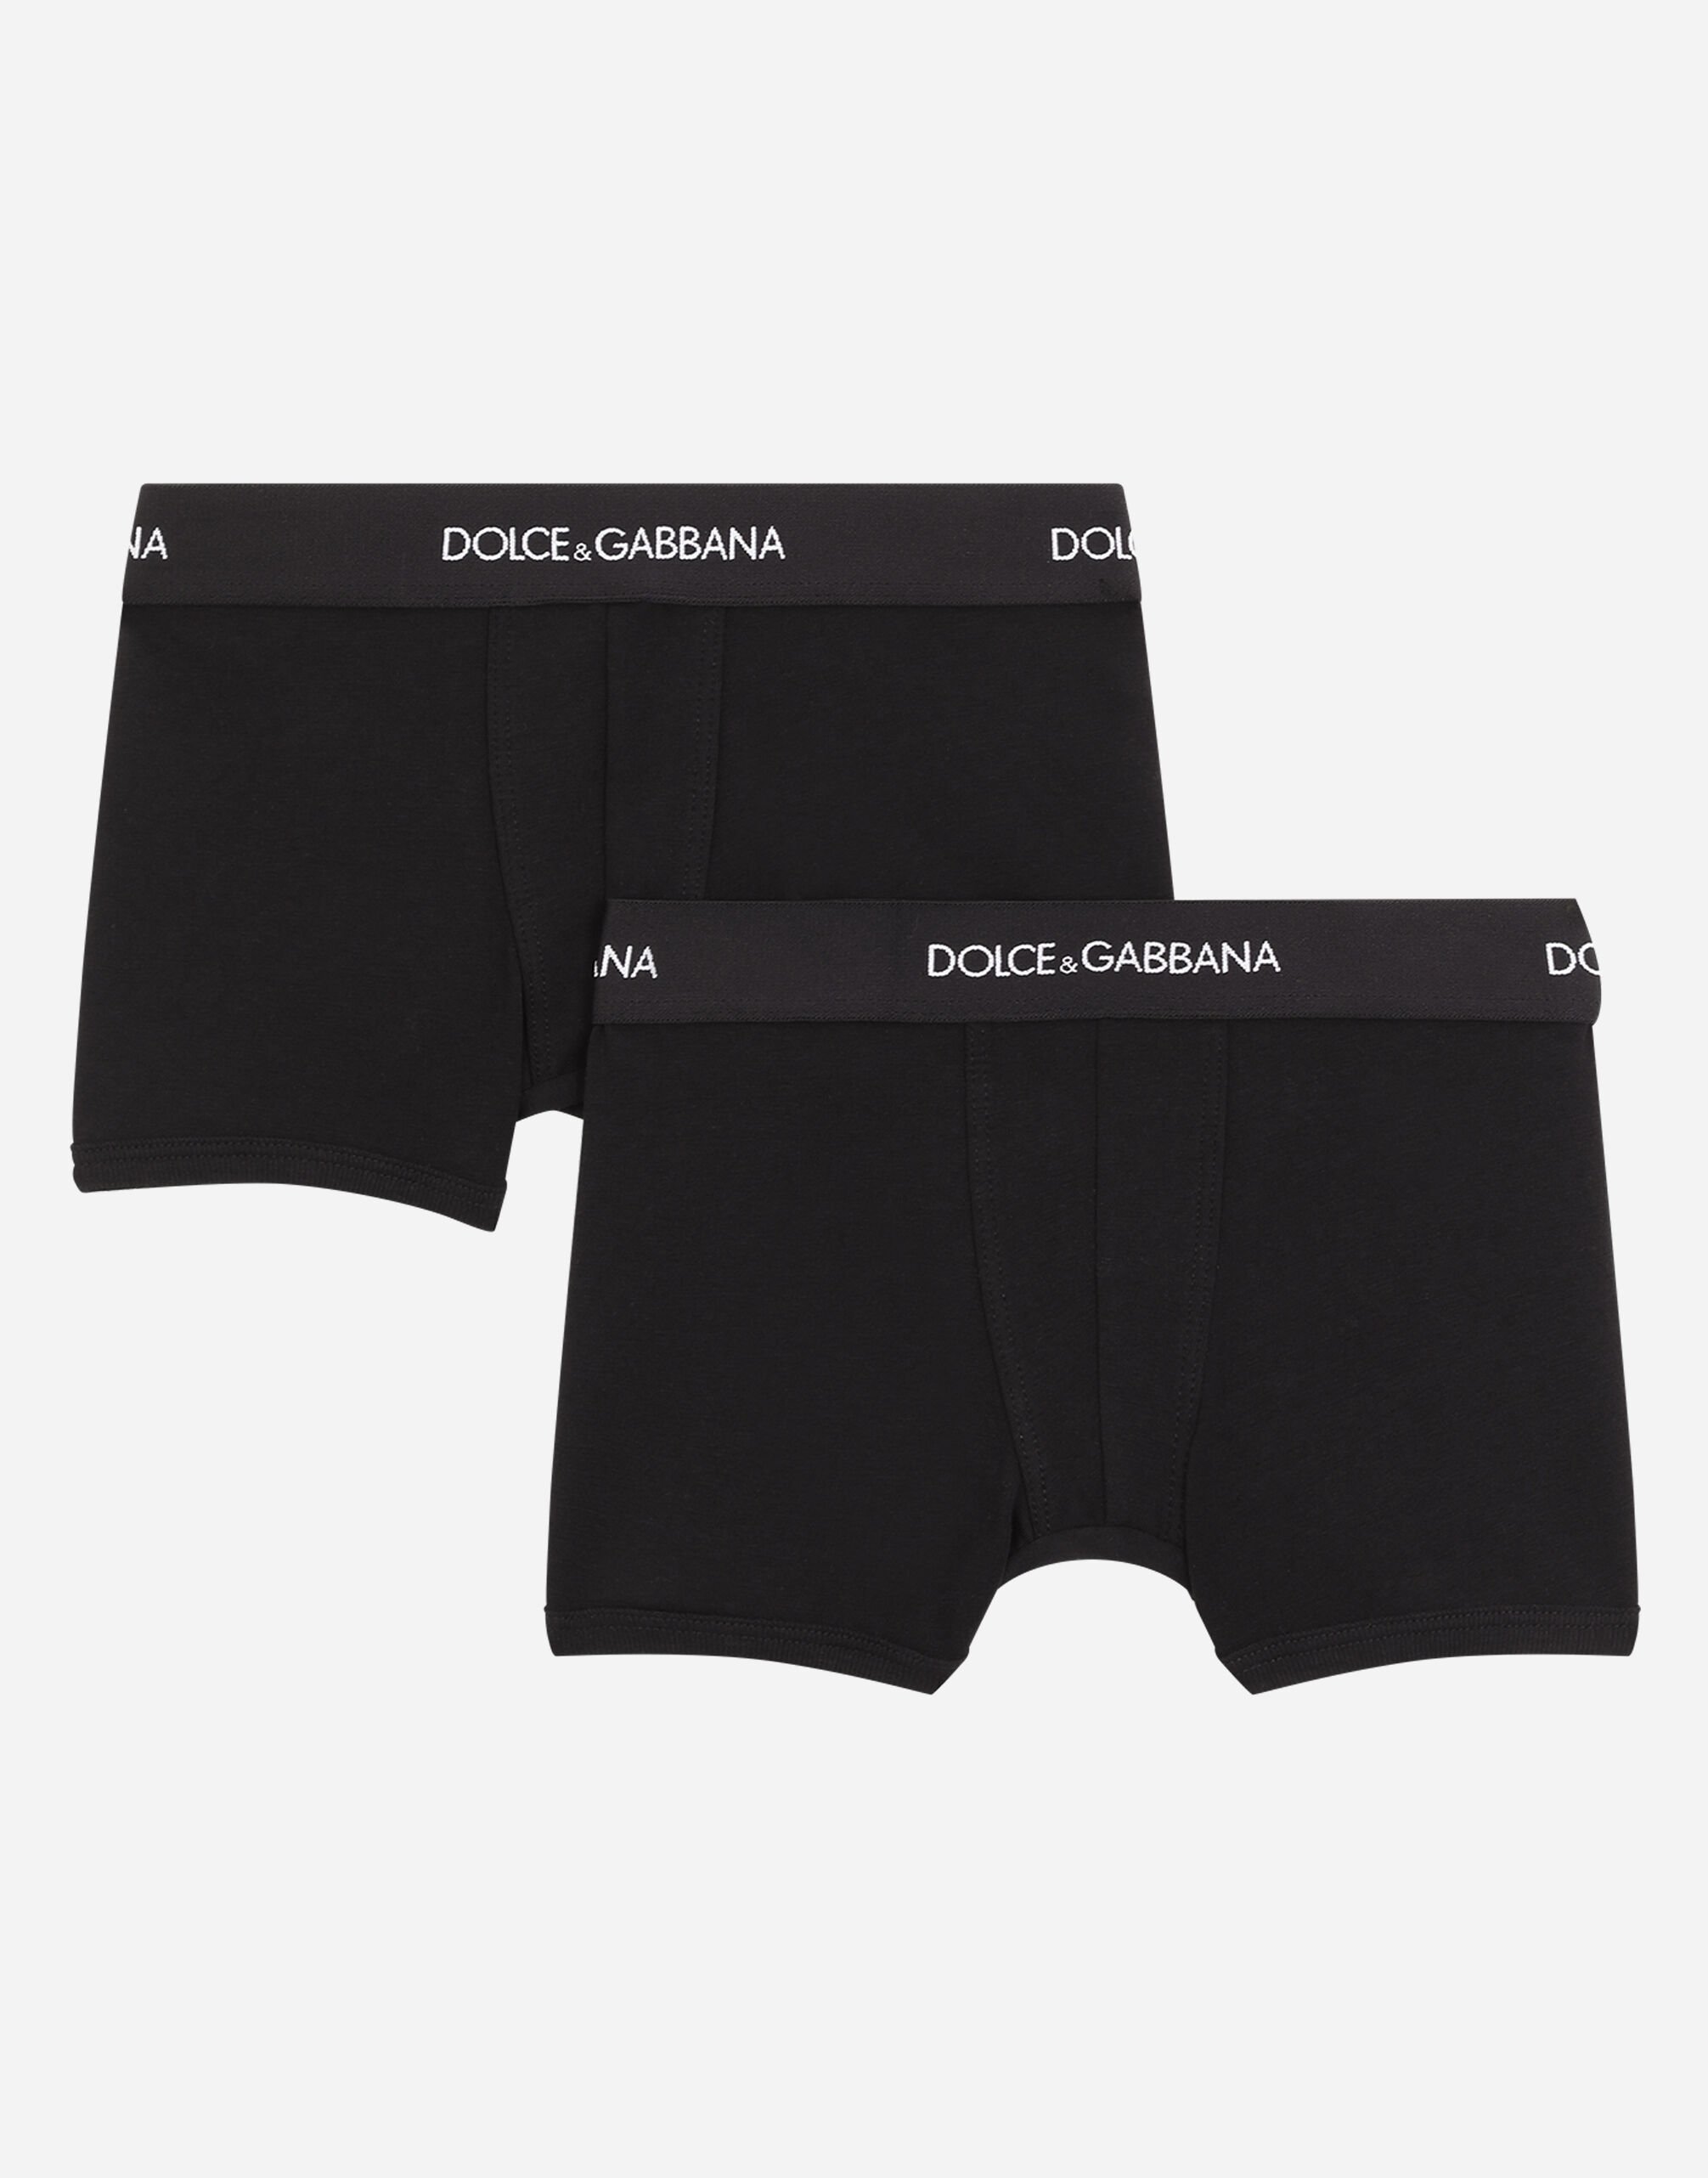 Dolce & Gabbana Kit de dos calzoncillos bóxer con banda elástica con logotipo Negro L4J702G7OCU